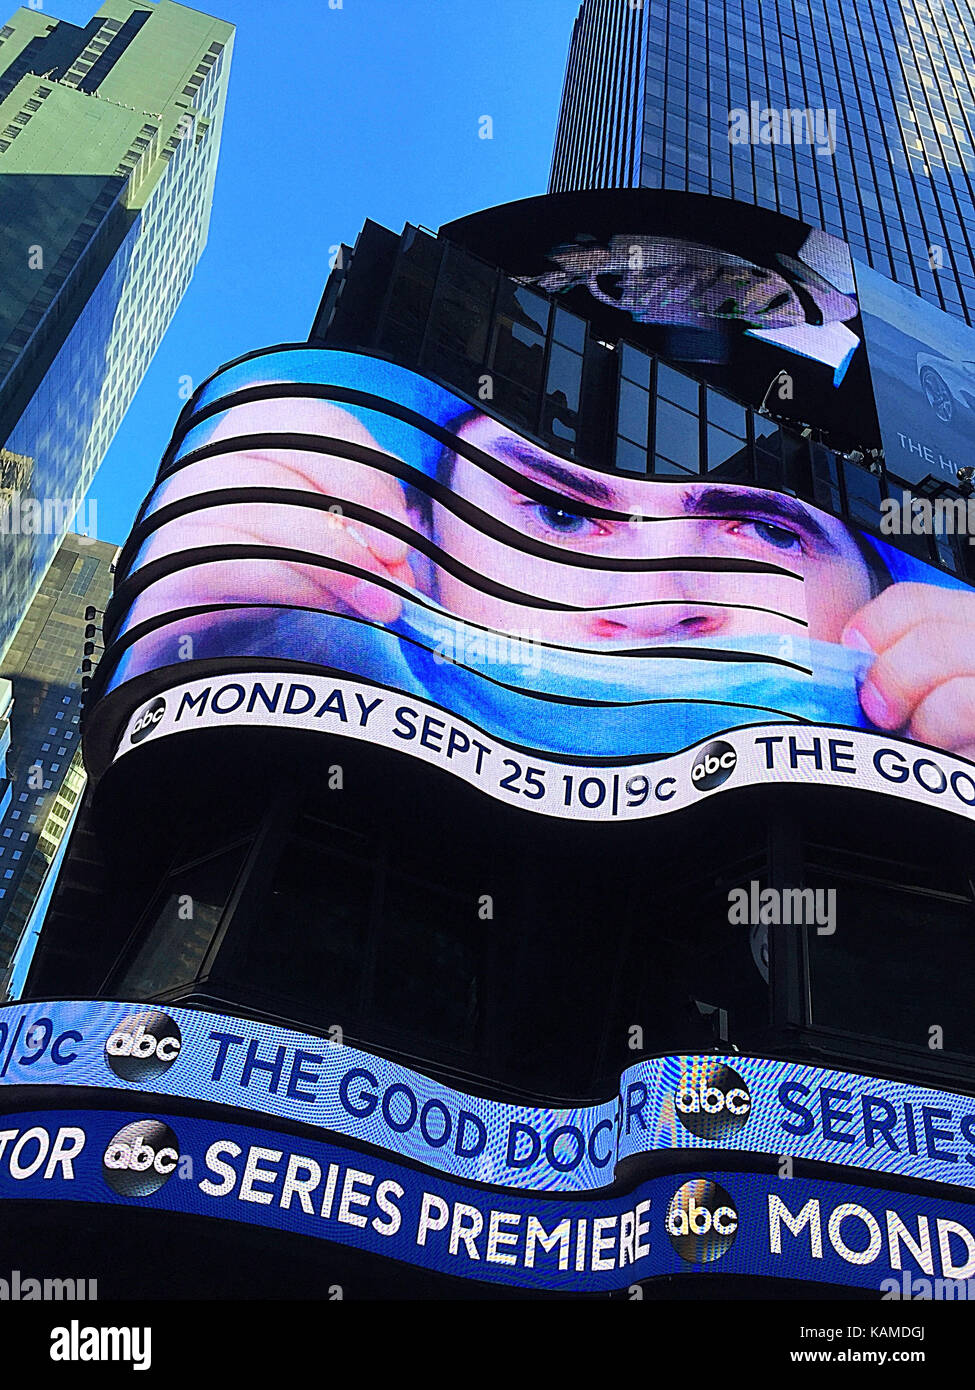 Enrouler autour de déménagement Billboard at Réseau de télévision ABC Studios à Times Square, New York, USA Banque D'Images